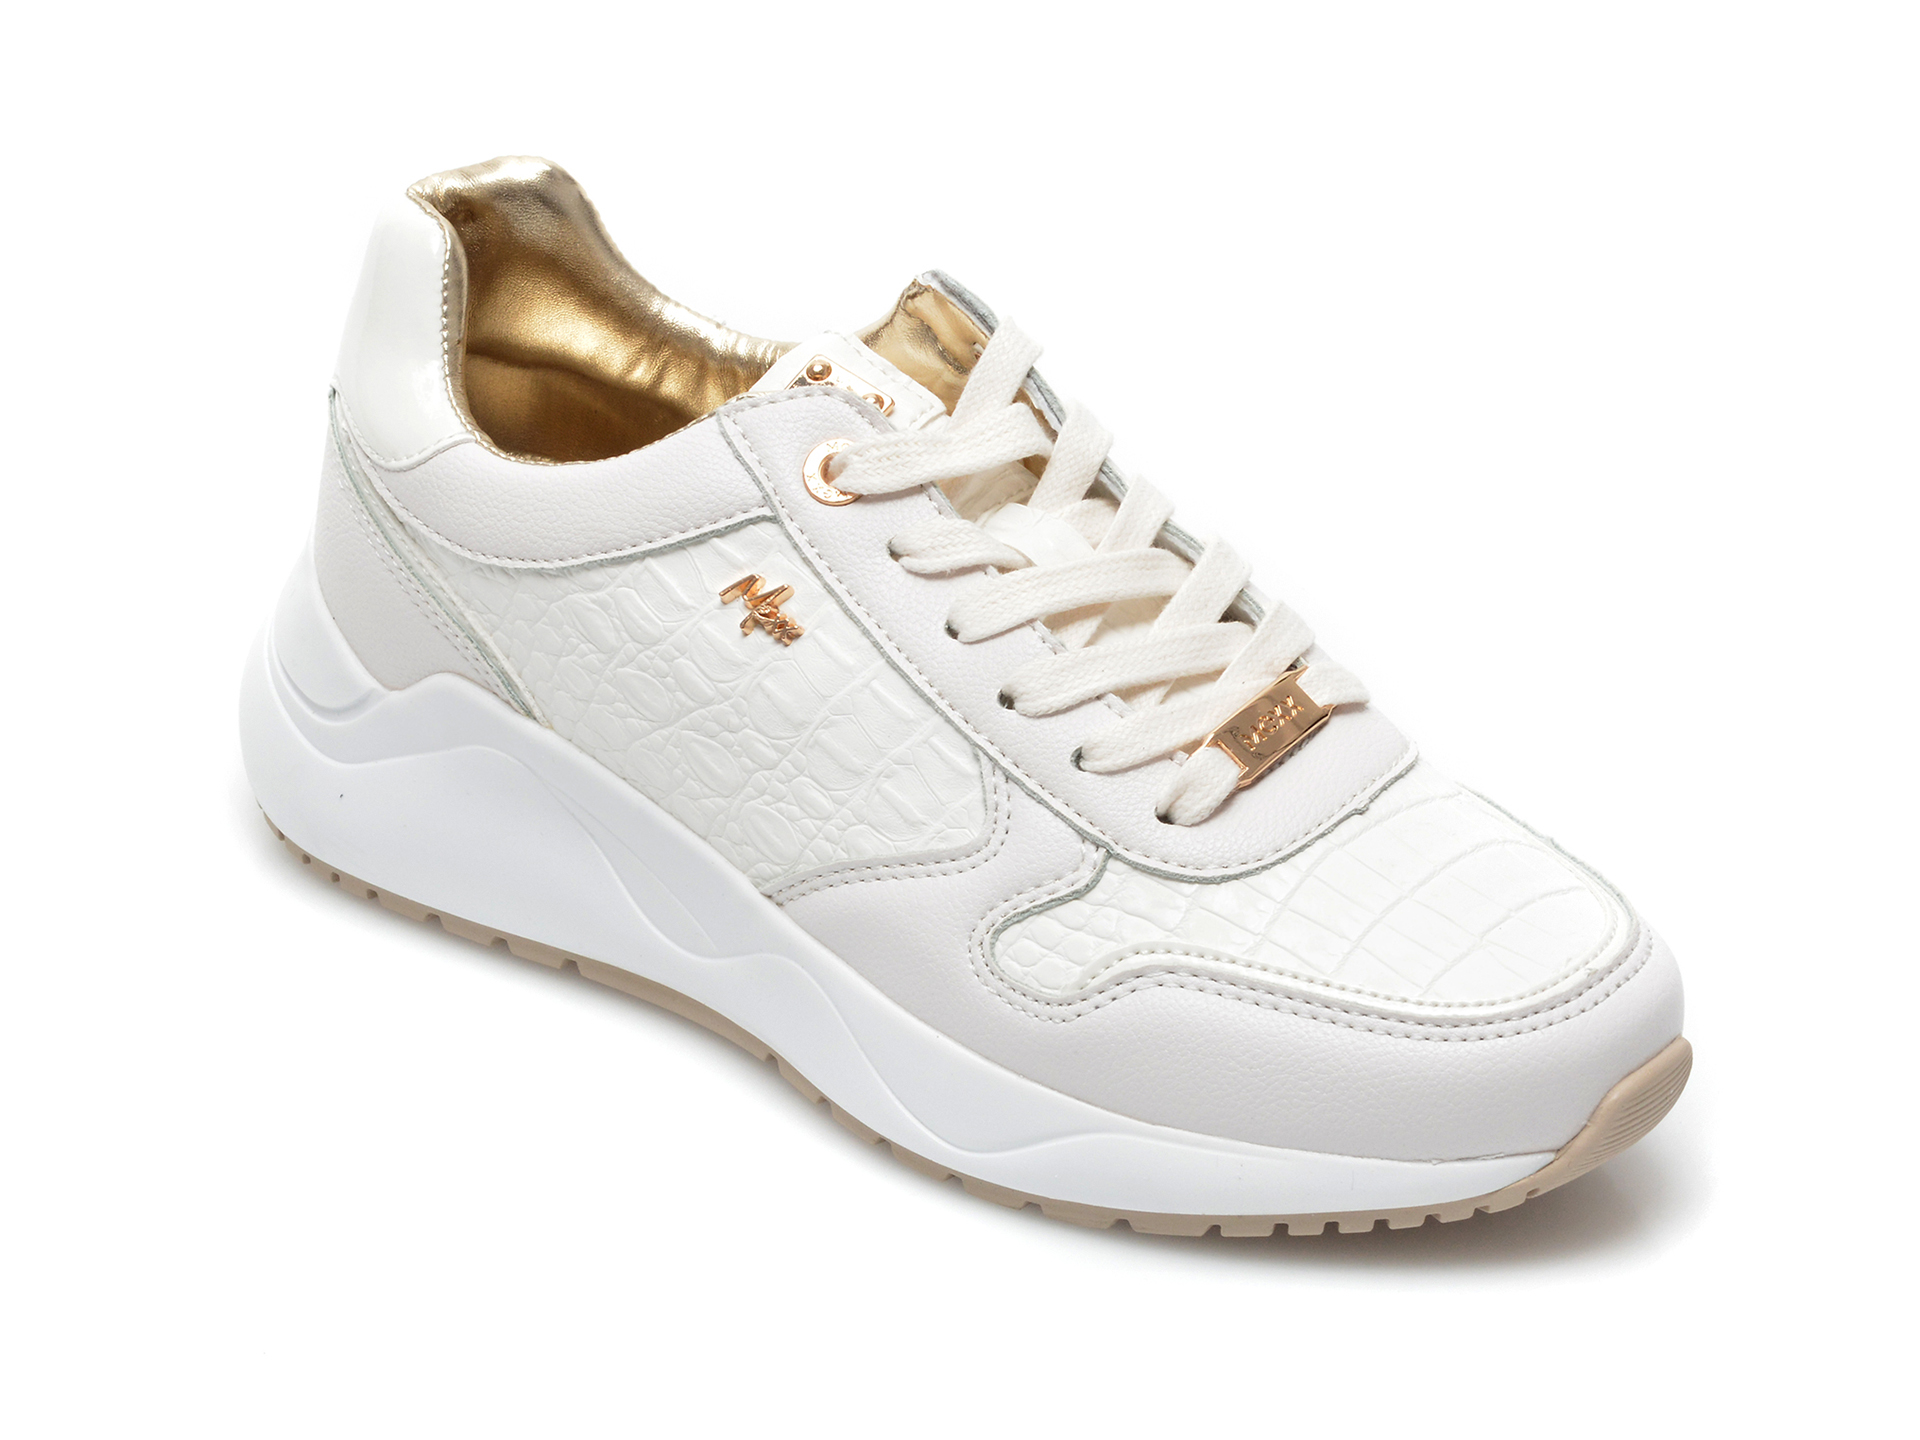 Pantofi sport MEXX albi, K0219, din piele ecologica Mexx